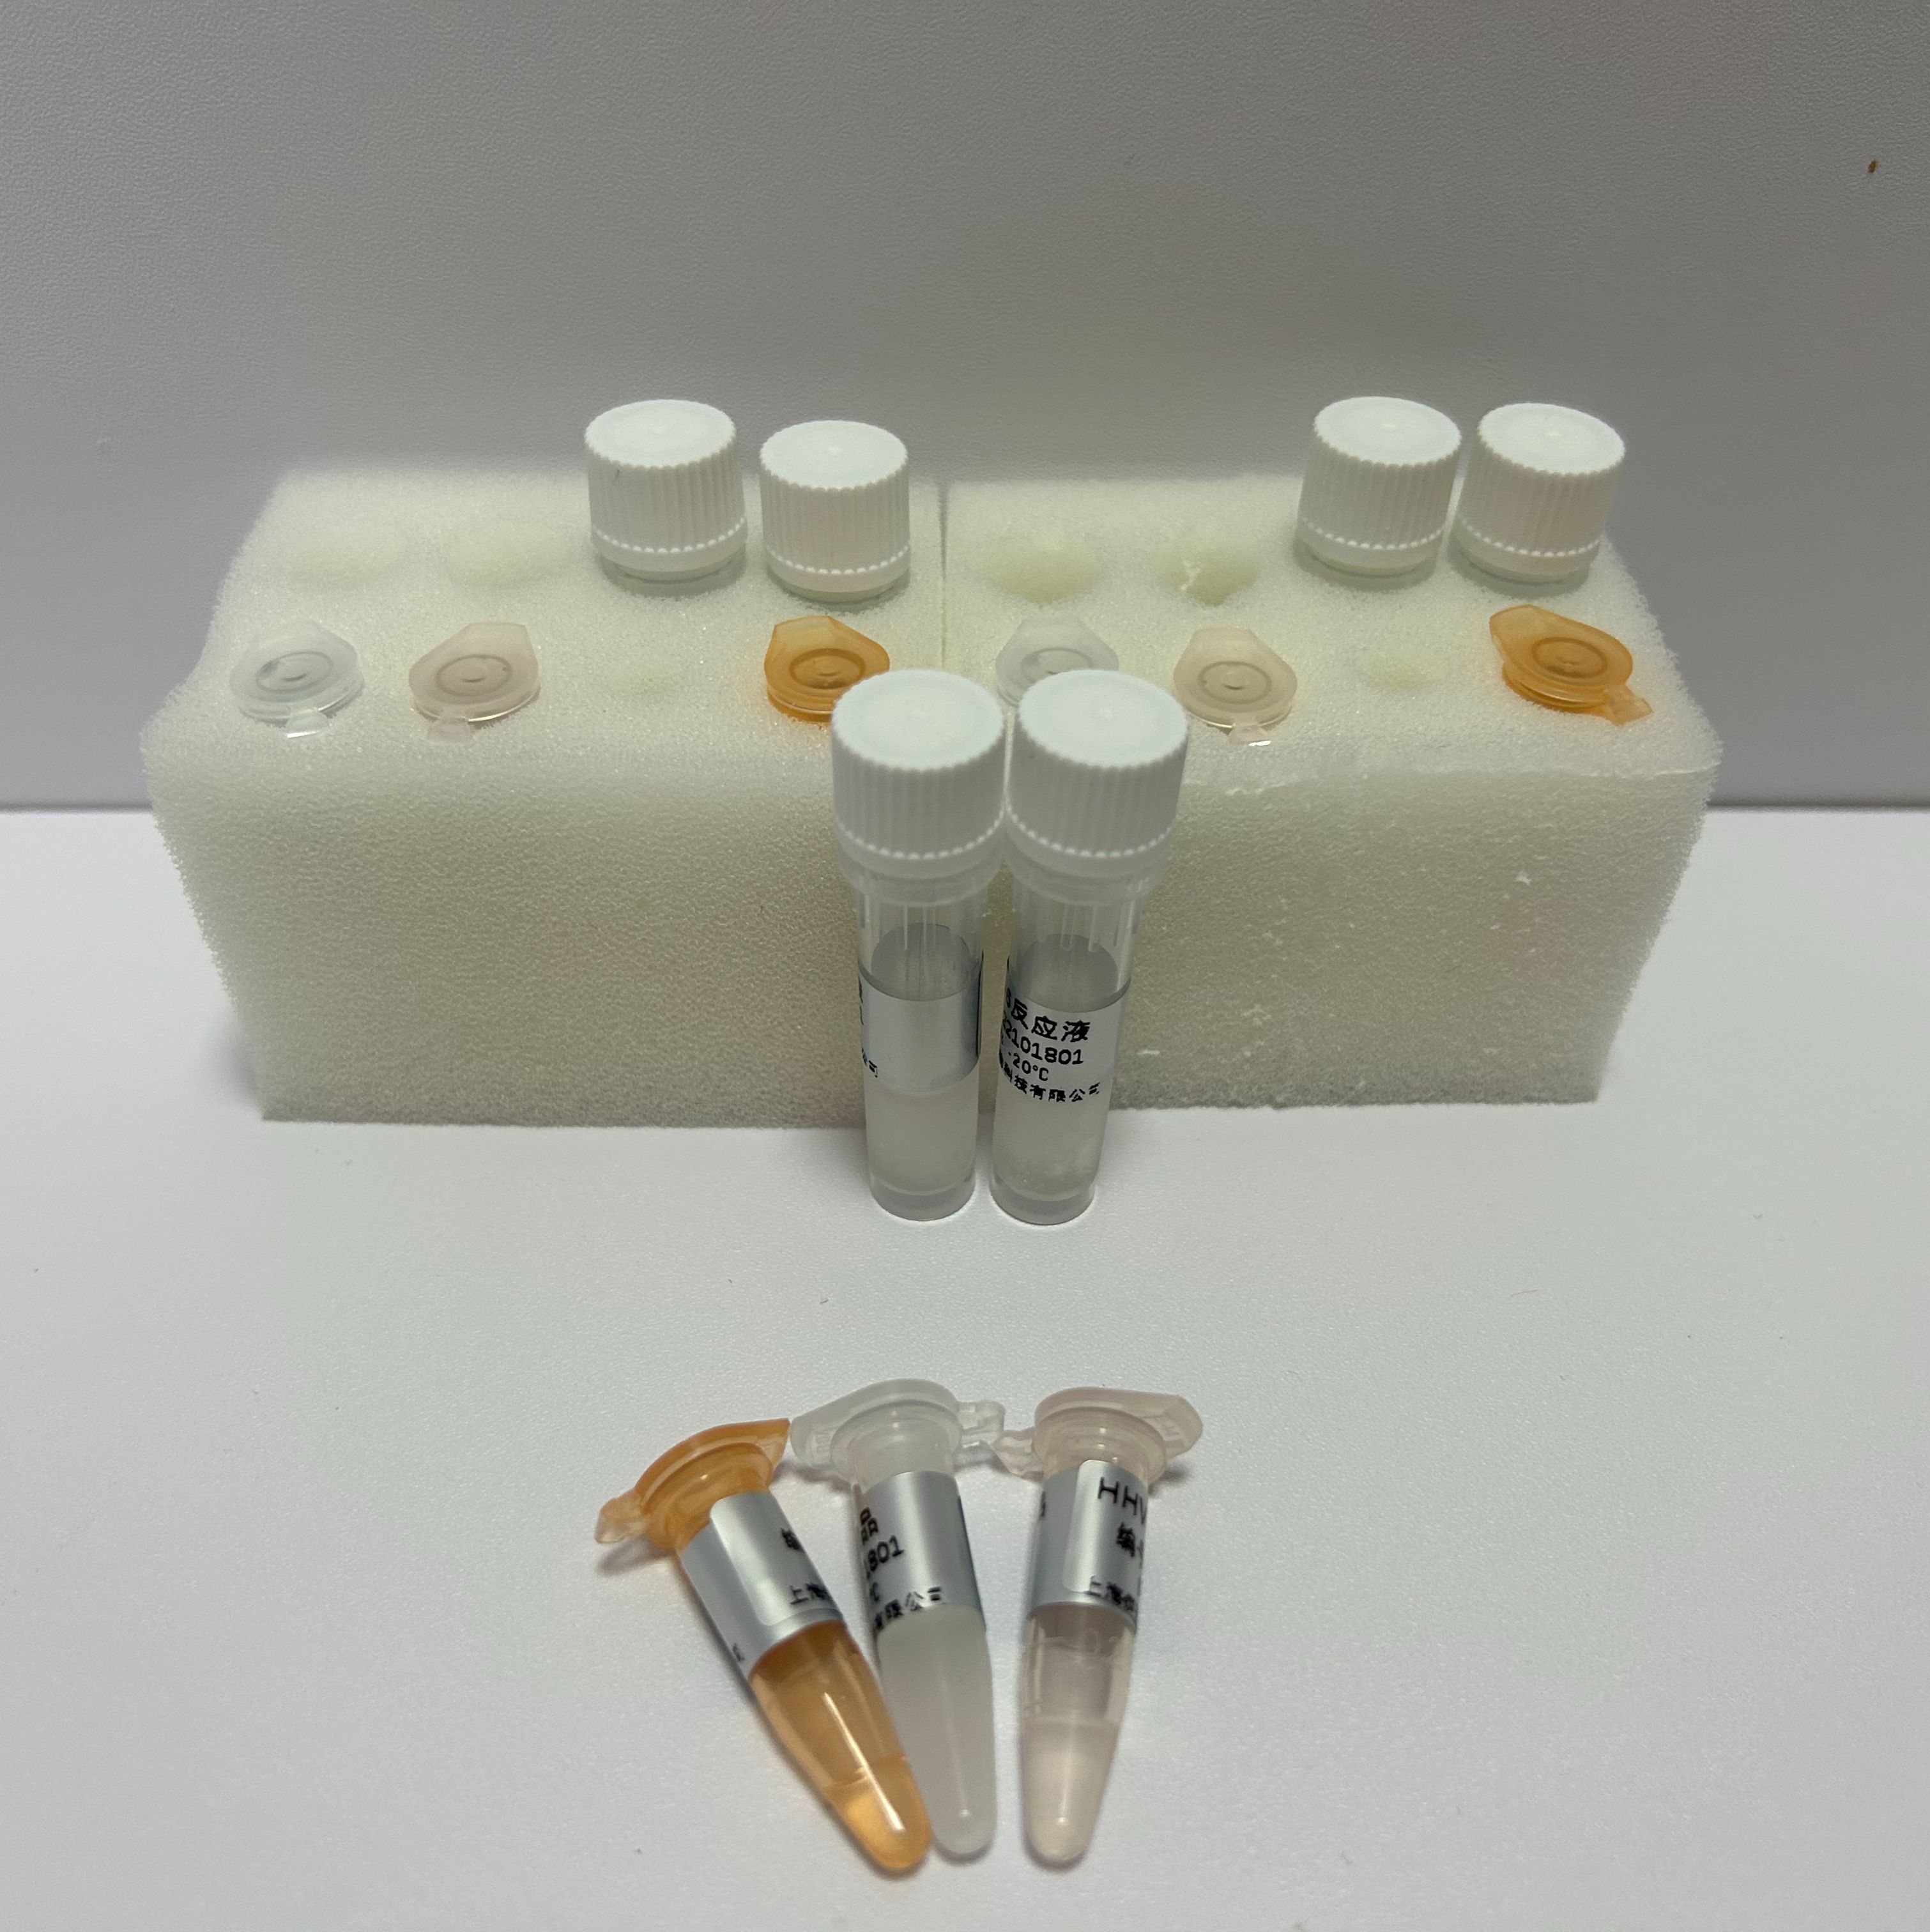 木霉属通用染料法荧光定量PCR试剂盒